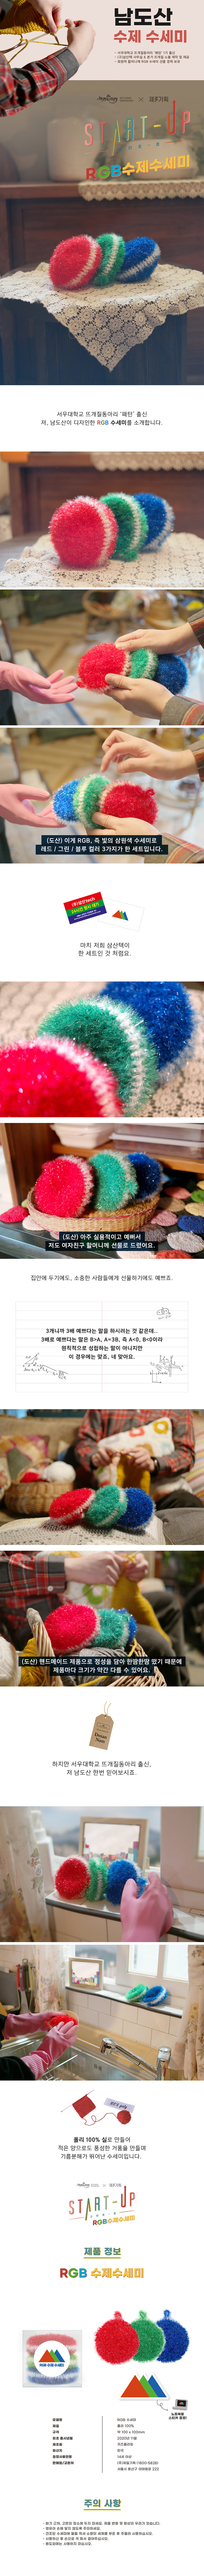 Start-Up / Nam Do San's RGB-Scrubber-Set (3 Stück)